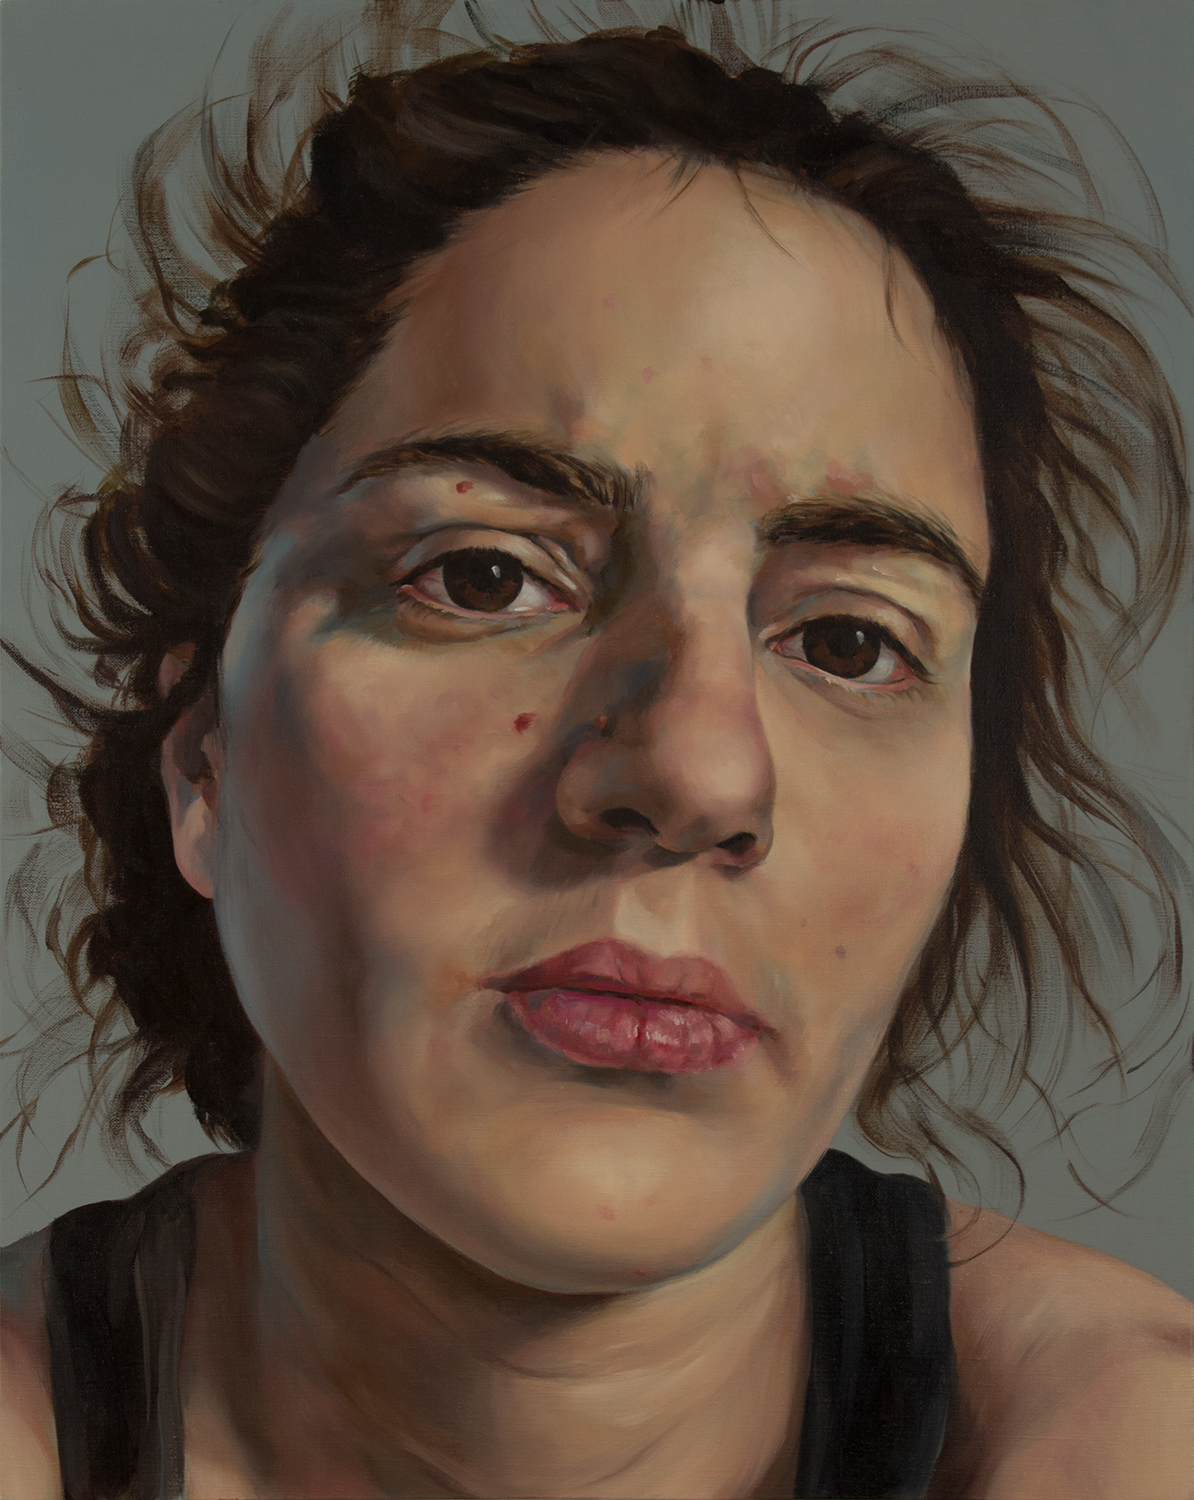   Anti-Selfie (Self-portrait I)   oil on linen  30" x 24," 2015   